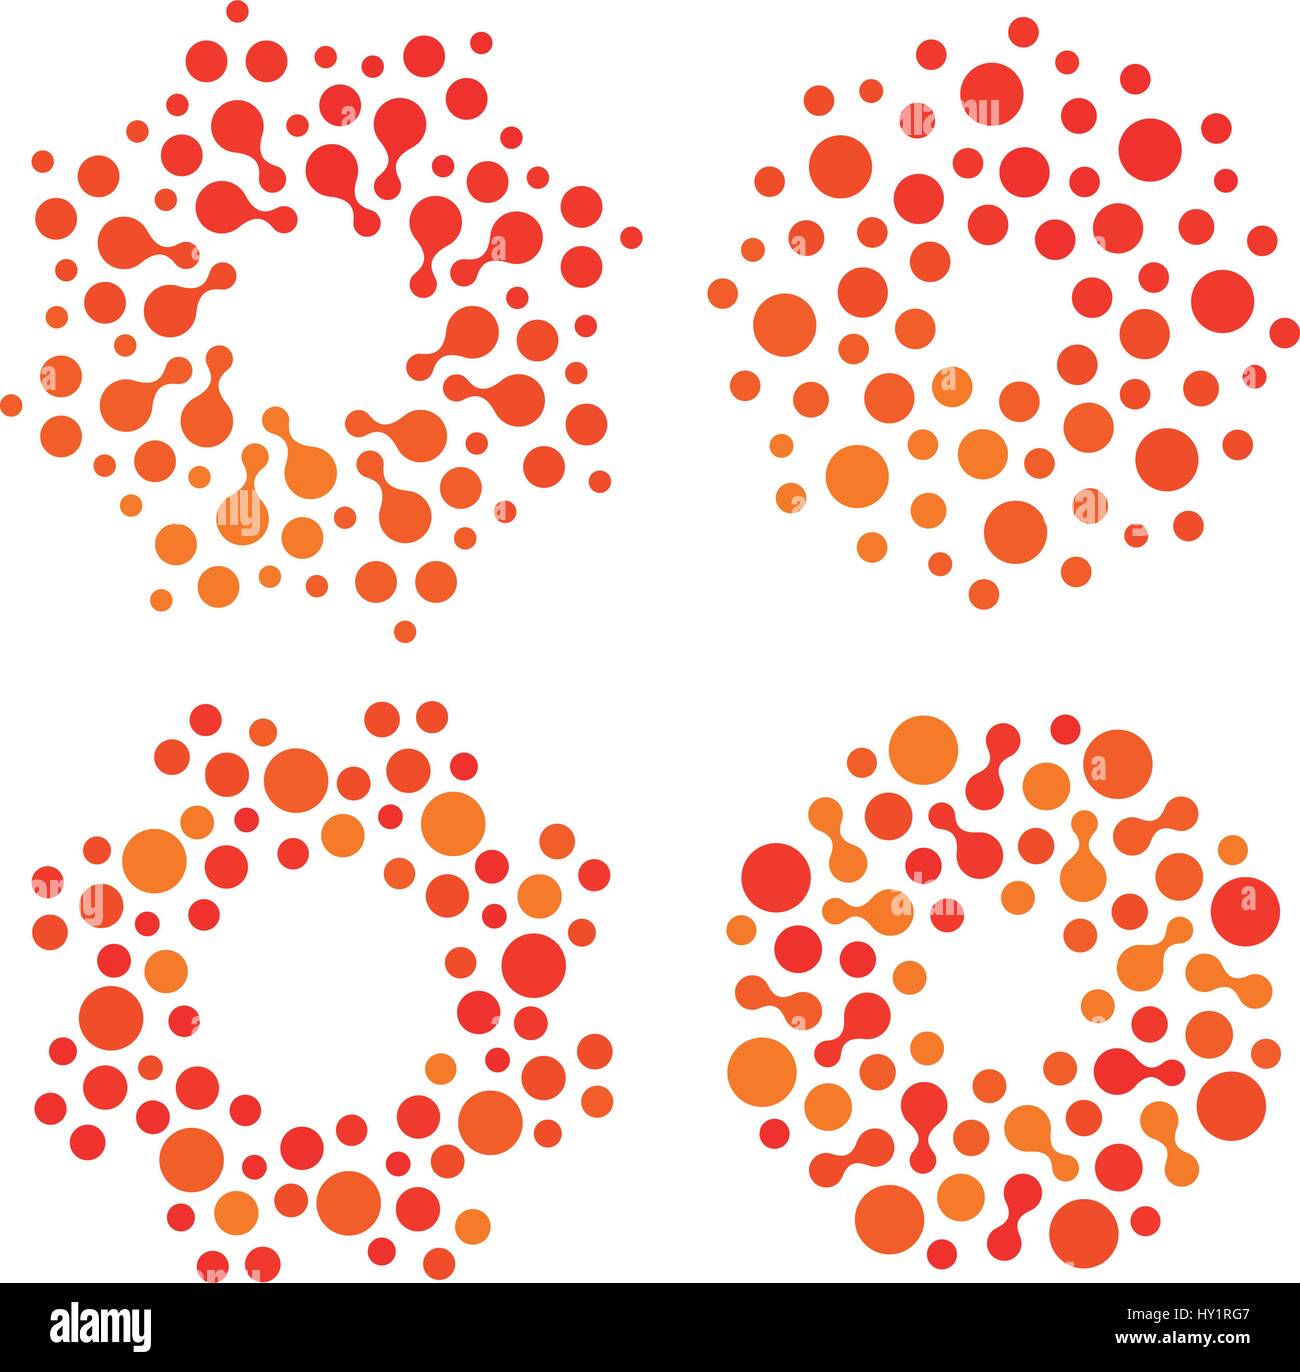 Isolierte abstrakte Runde Form Orange und Rot Farbe Logo Set, gepunktete stilisierte Sonne Logo-Sammlung auf weißem Hintergrund-Vektor-illustration Stock Vektor